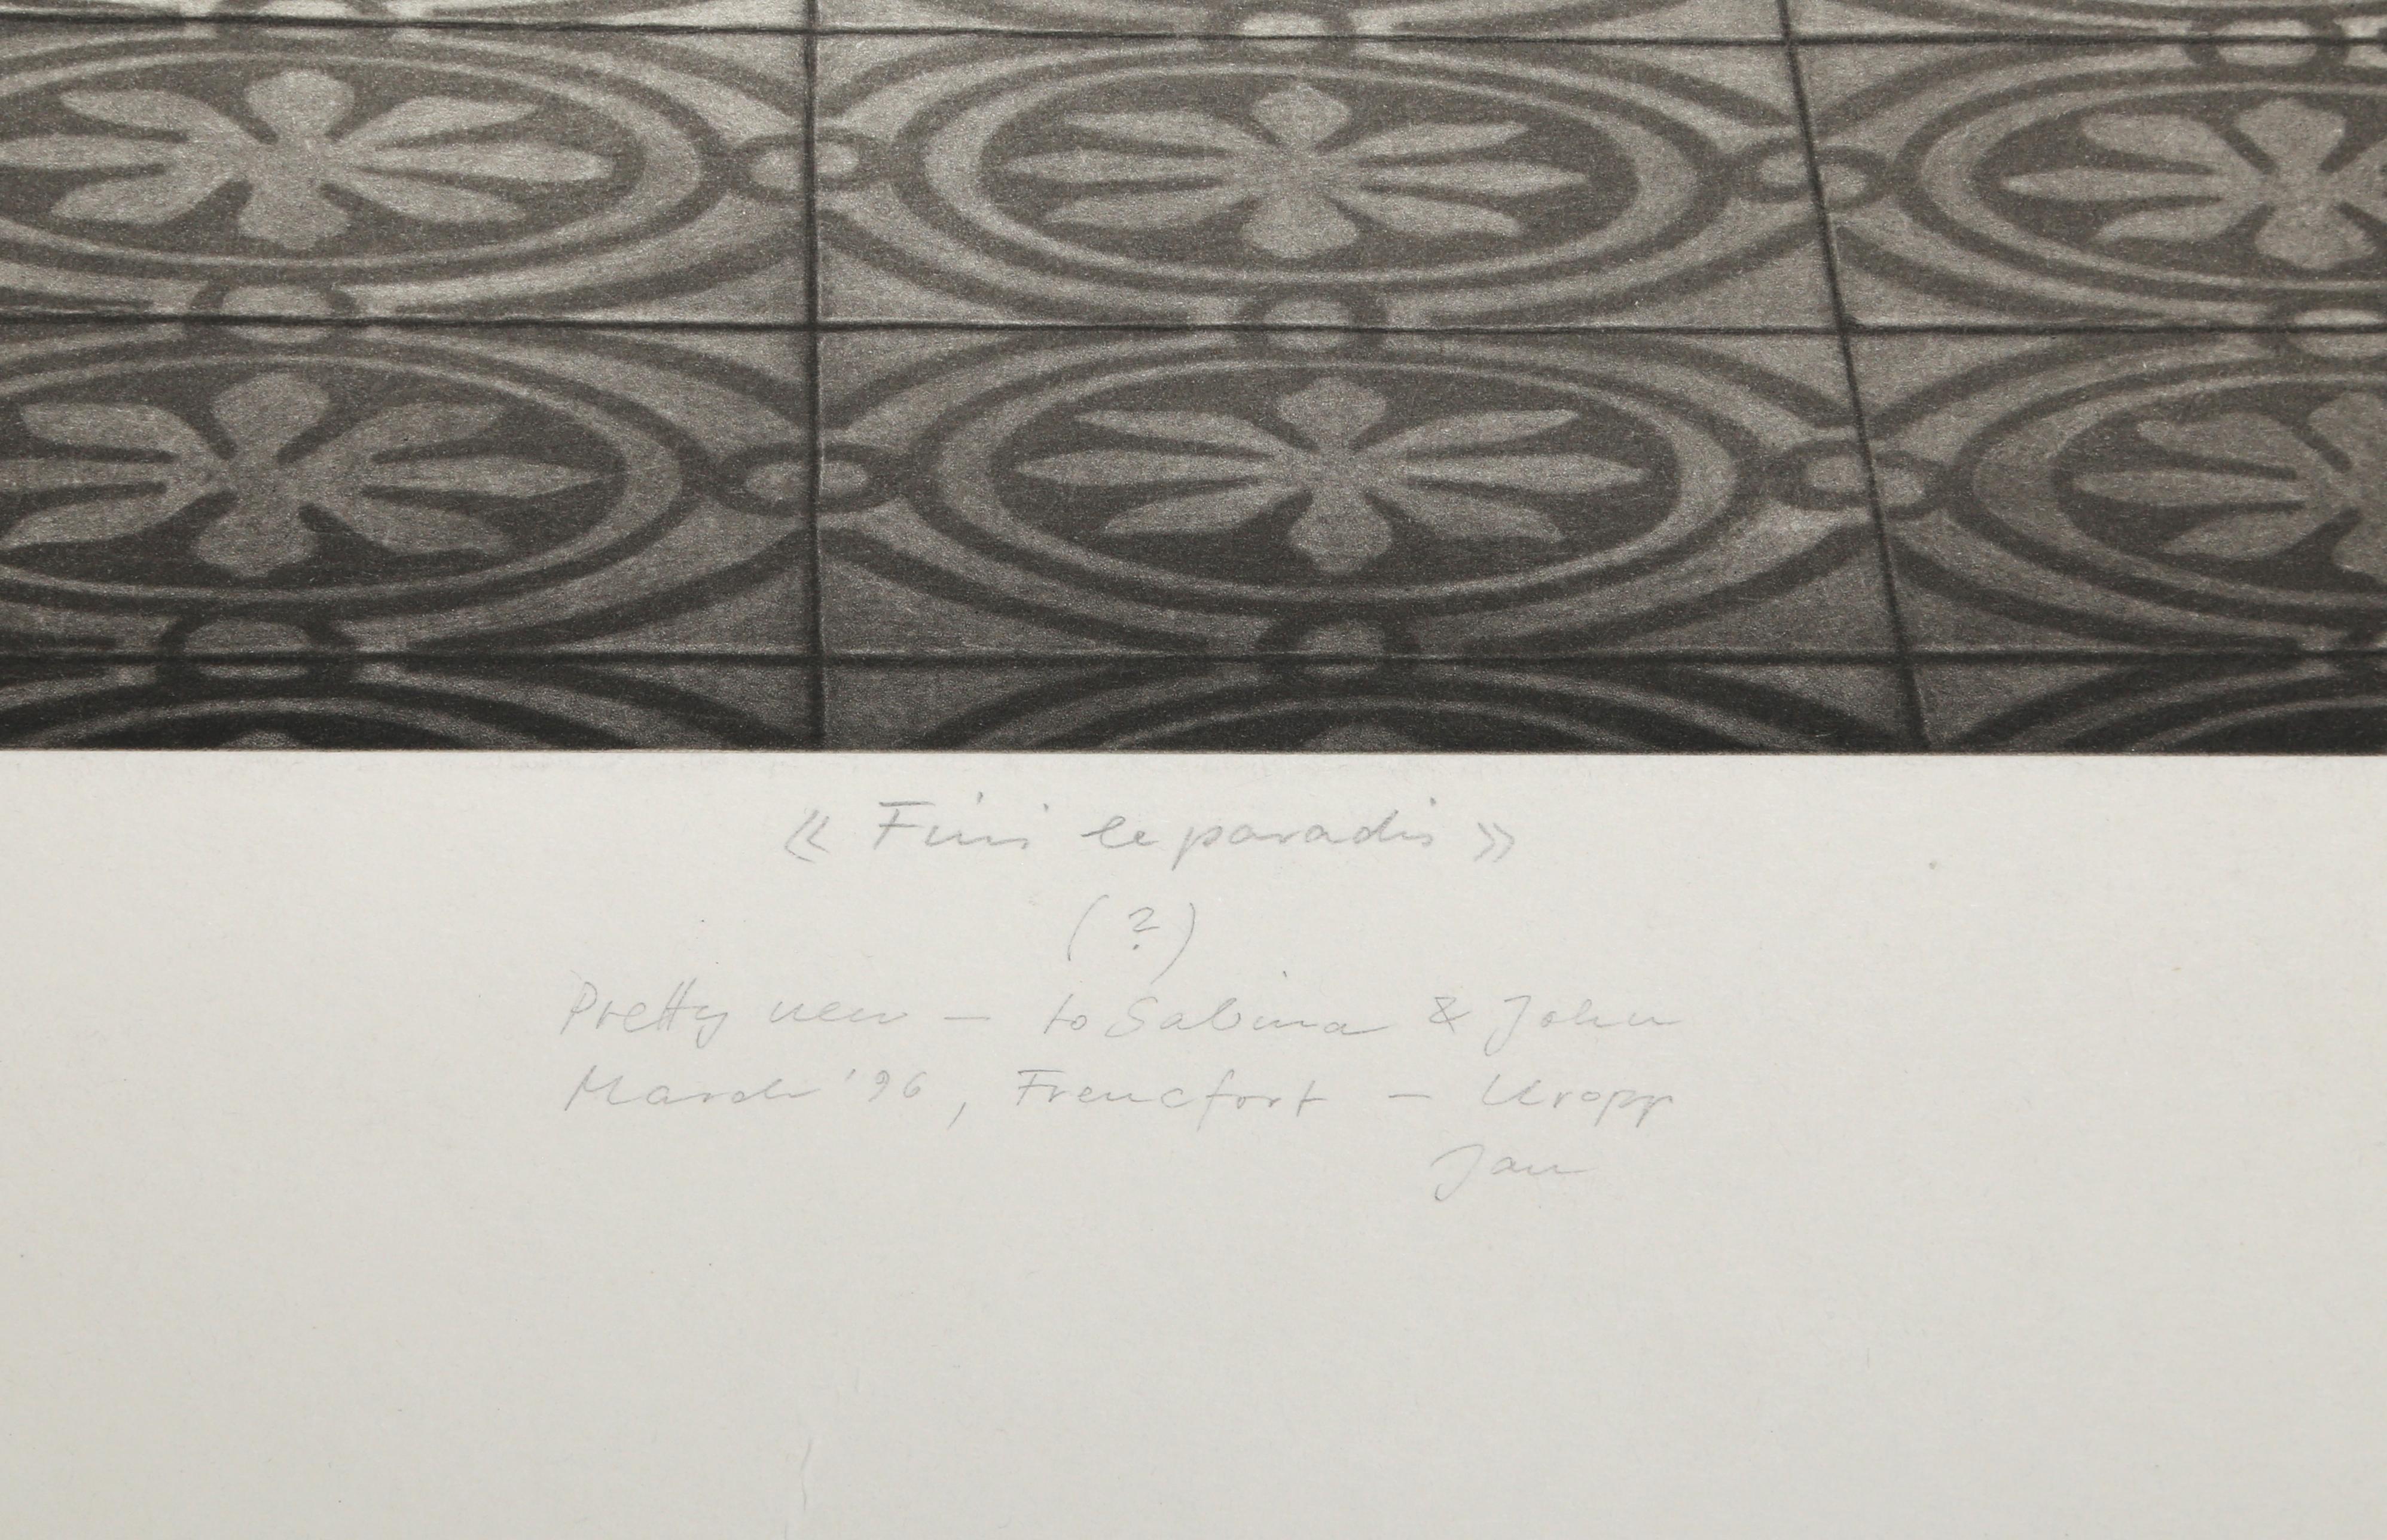 Finis le Paradis
Jan Peter Tripp
Deutsch (1945)
Datum: 1994
Radierung, signiert, nummeriert, datiert und betitelt mit Bleistift
Ausgabe von 6/66
Bildgröße: 39 x 20 Zoll
Größe: 49 x 27,5 in. (124,46 x 69,85 cm)